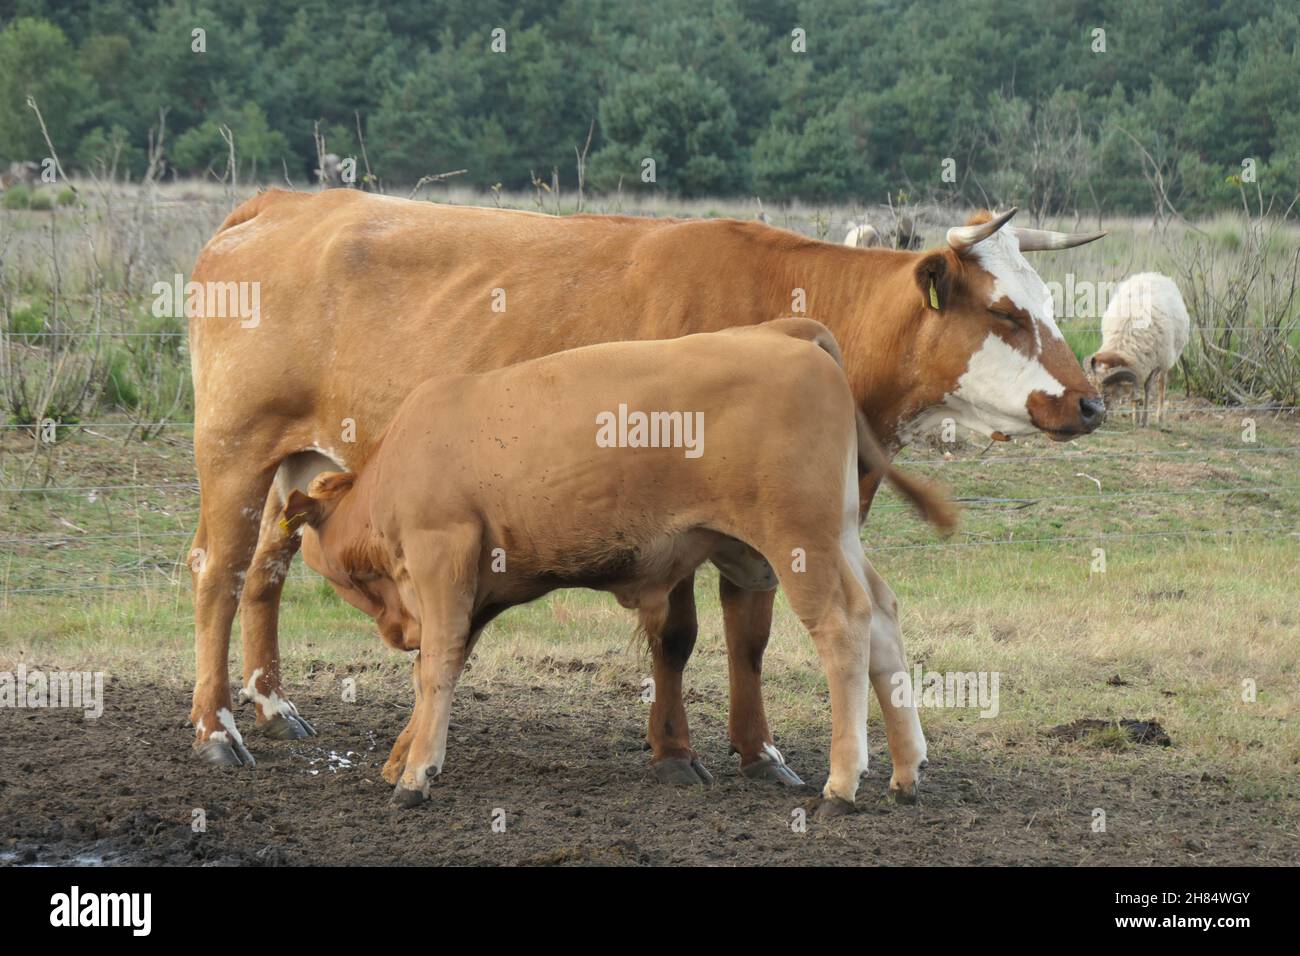 Mucca marrone con vitello marrone insieme nel prato. Bevande a base di vitello dalla mucca. Foto Stock